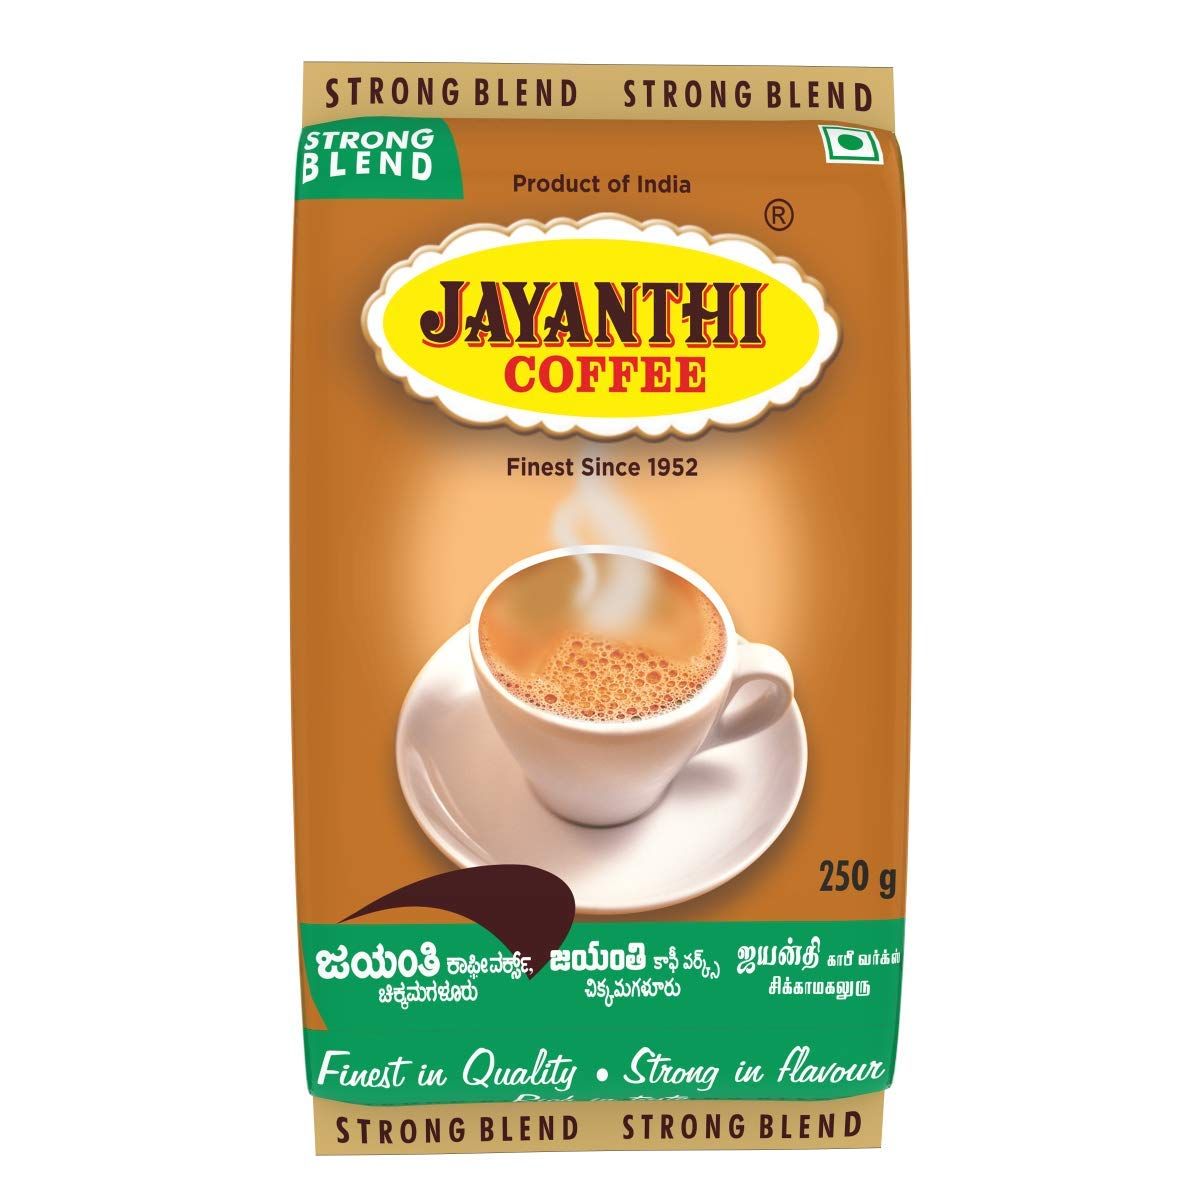 Jayanthi Strong Blend Coffee Image